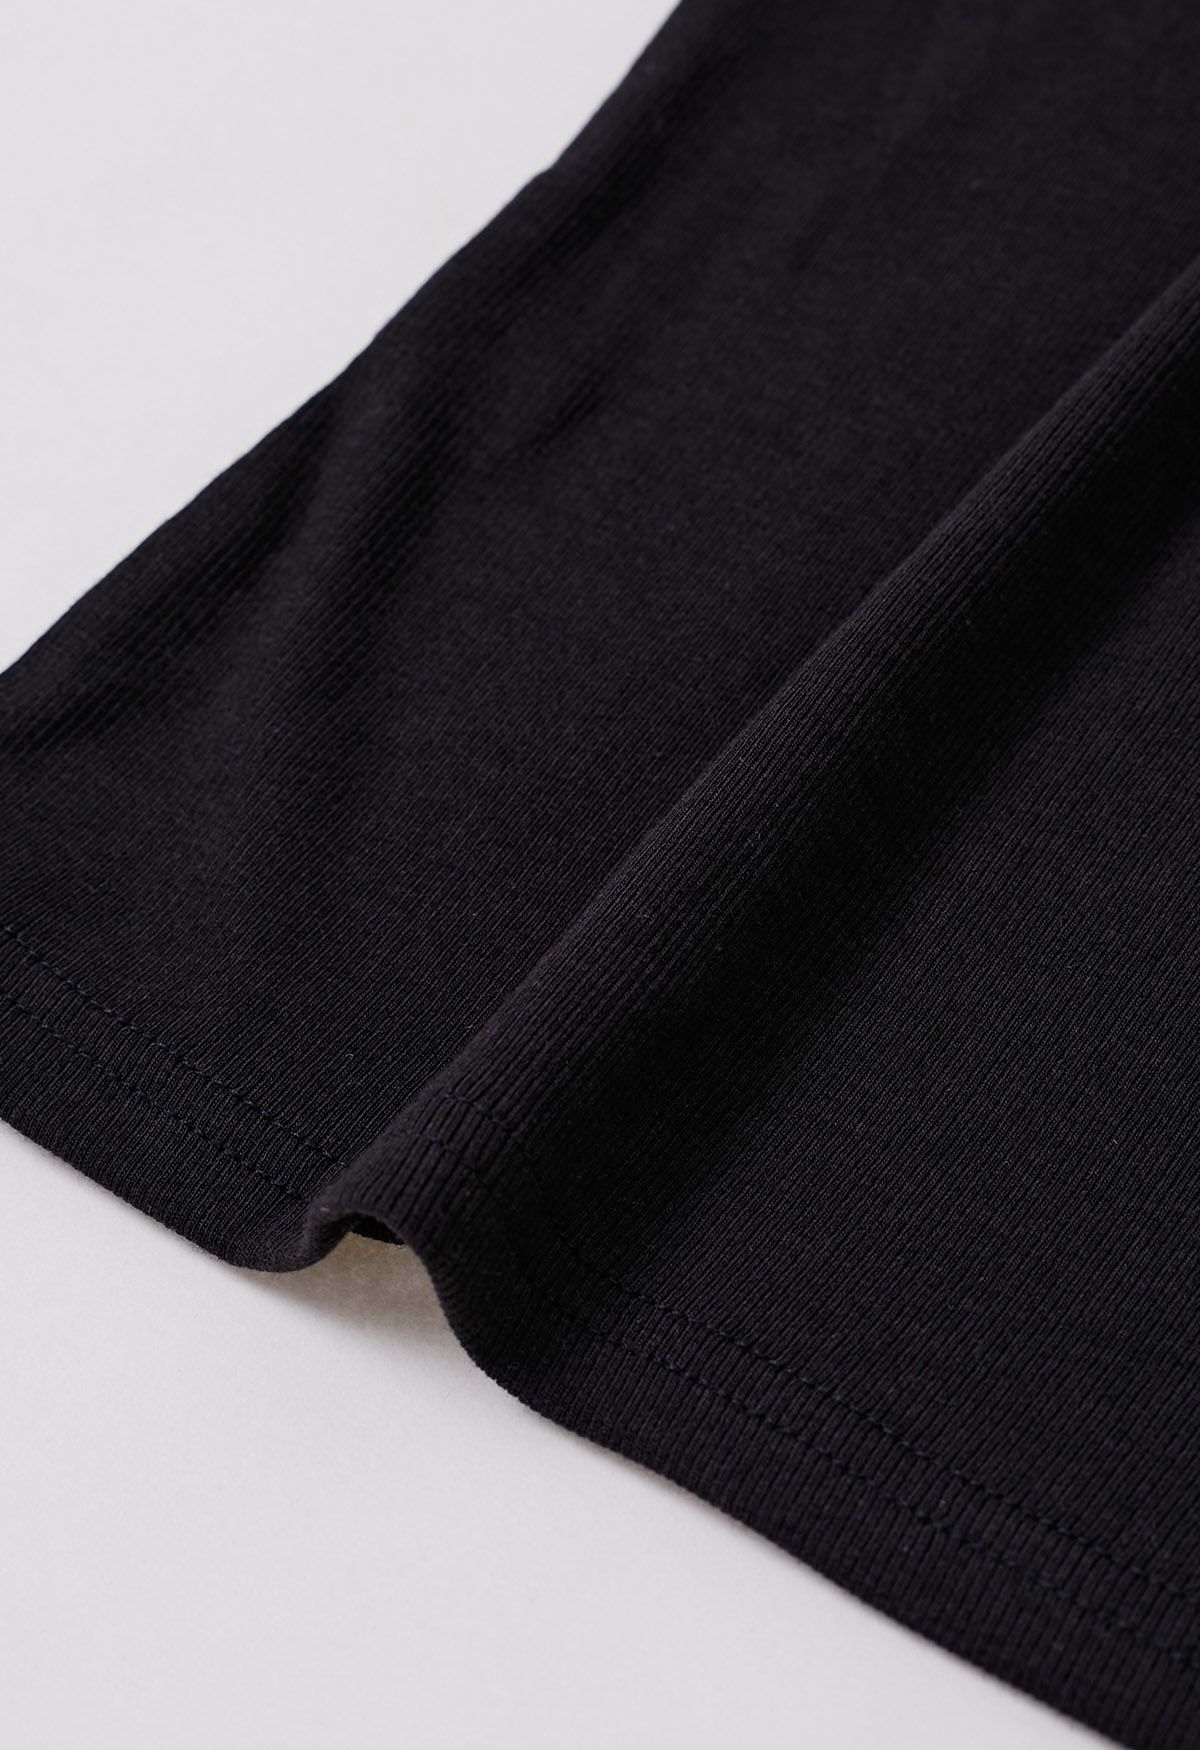 Simplicity – Camisole-Oberteil mit Knopfleiste vorn in Schwarz